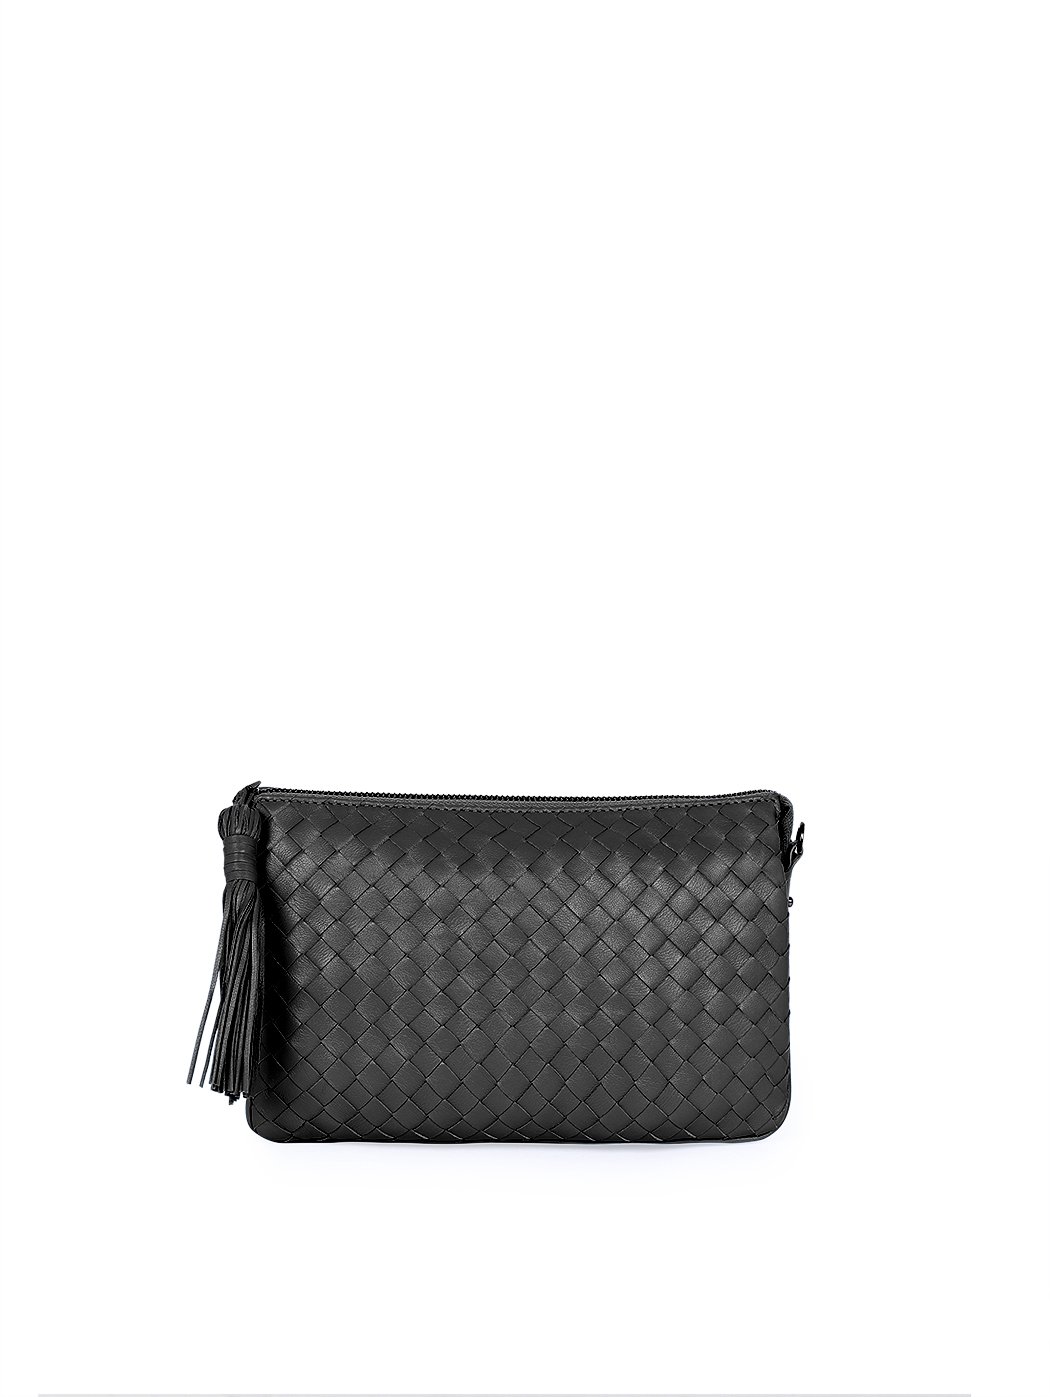 Плетеная сумка – клатч со съемным ремнем коллекции Intrecci черного цвета